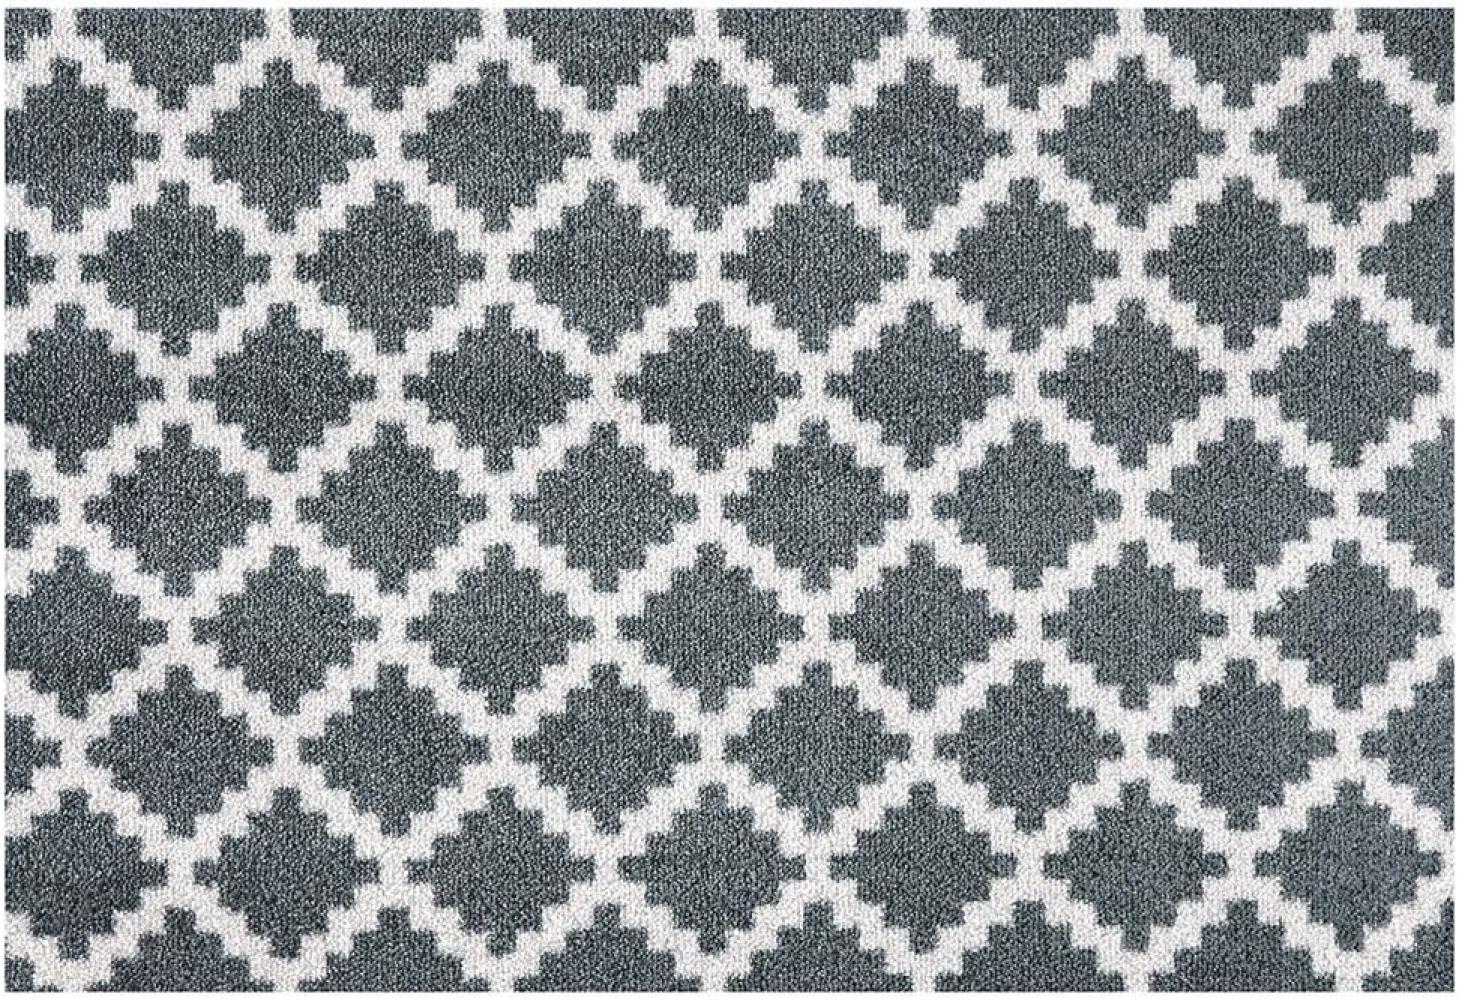 Kurzflor Fußmatte Elegance Grau Anthrazit - 50x70x0,7cm Bild 1